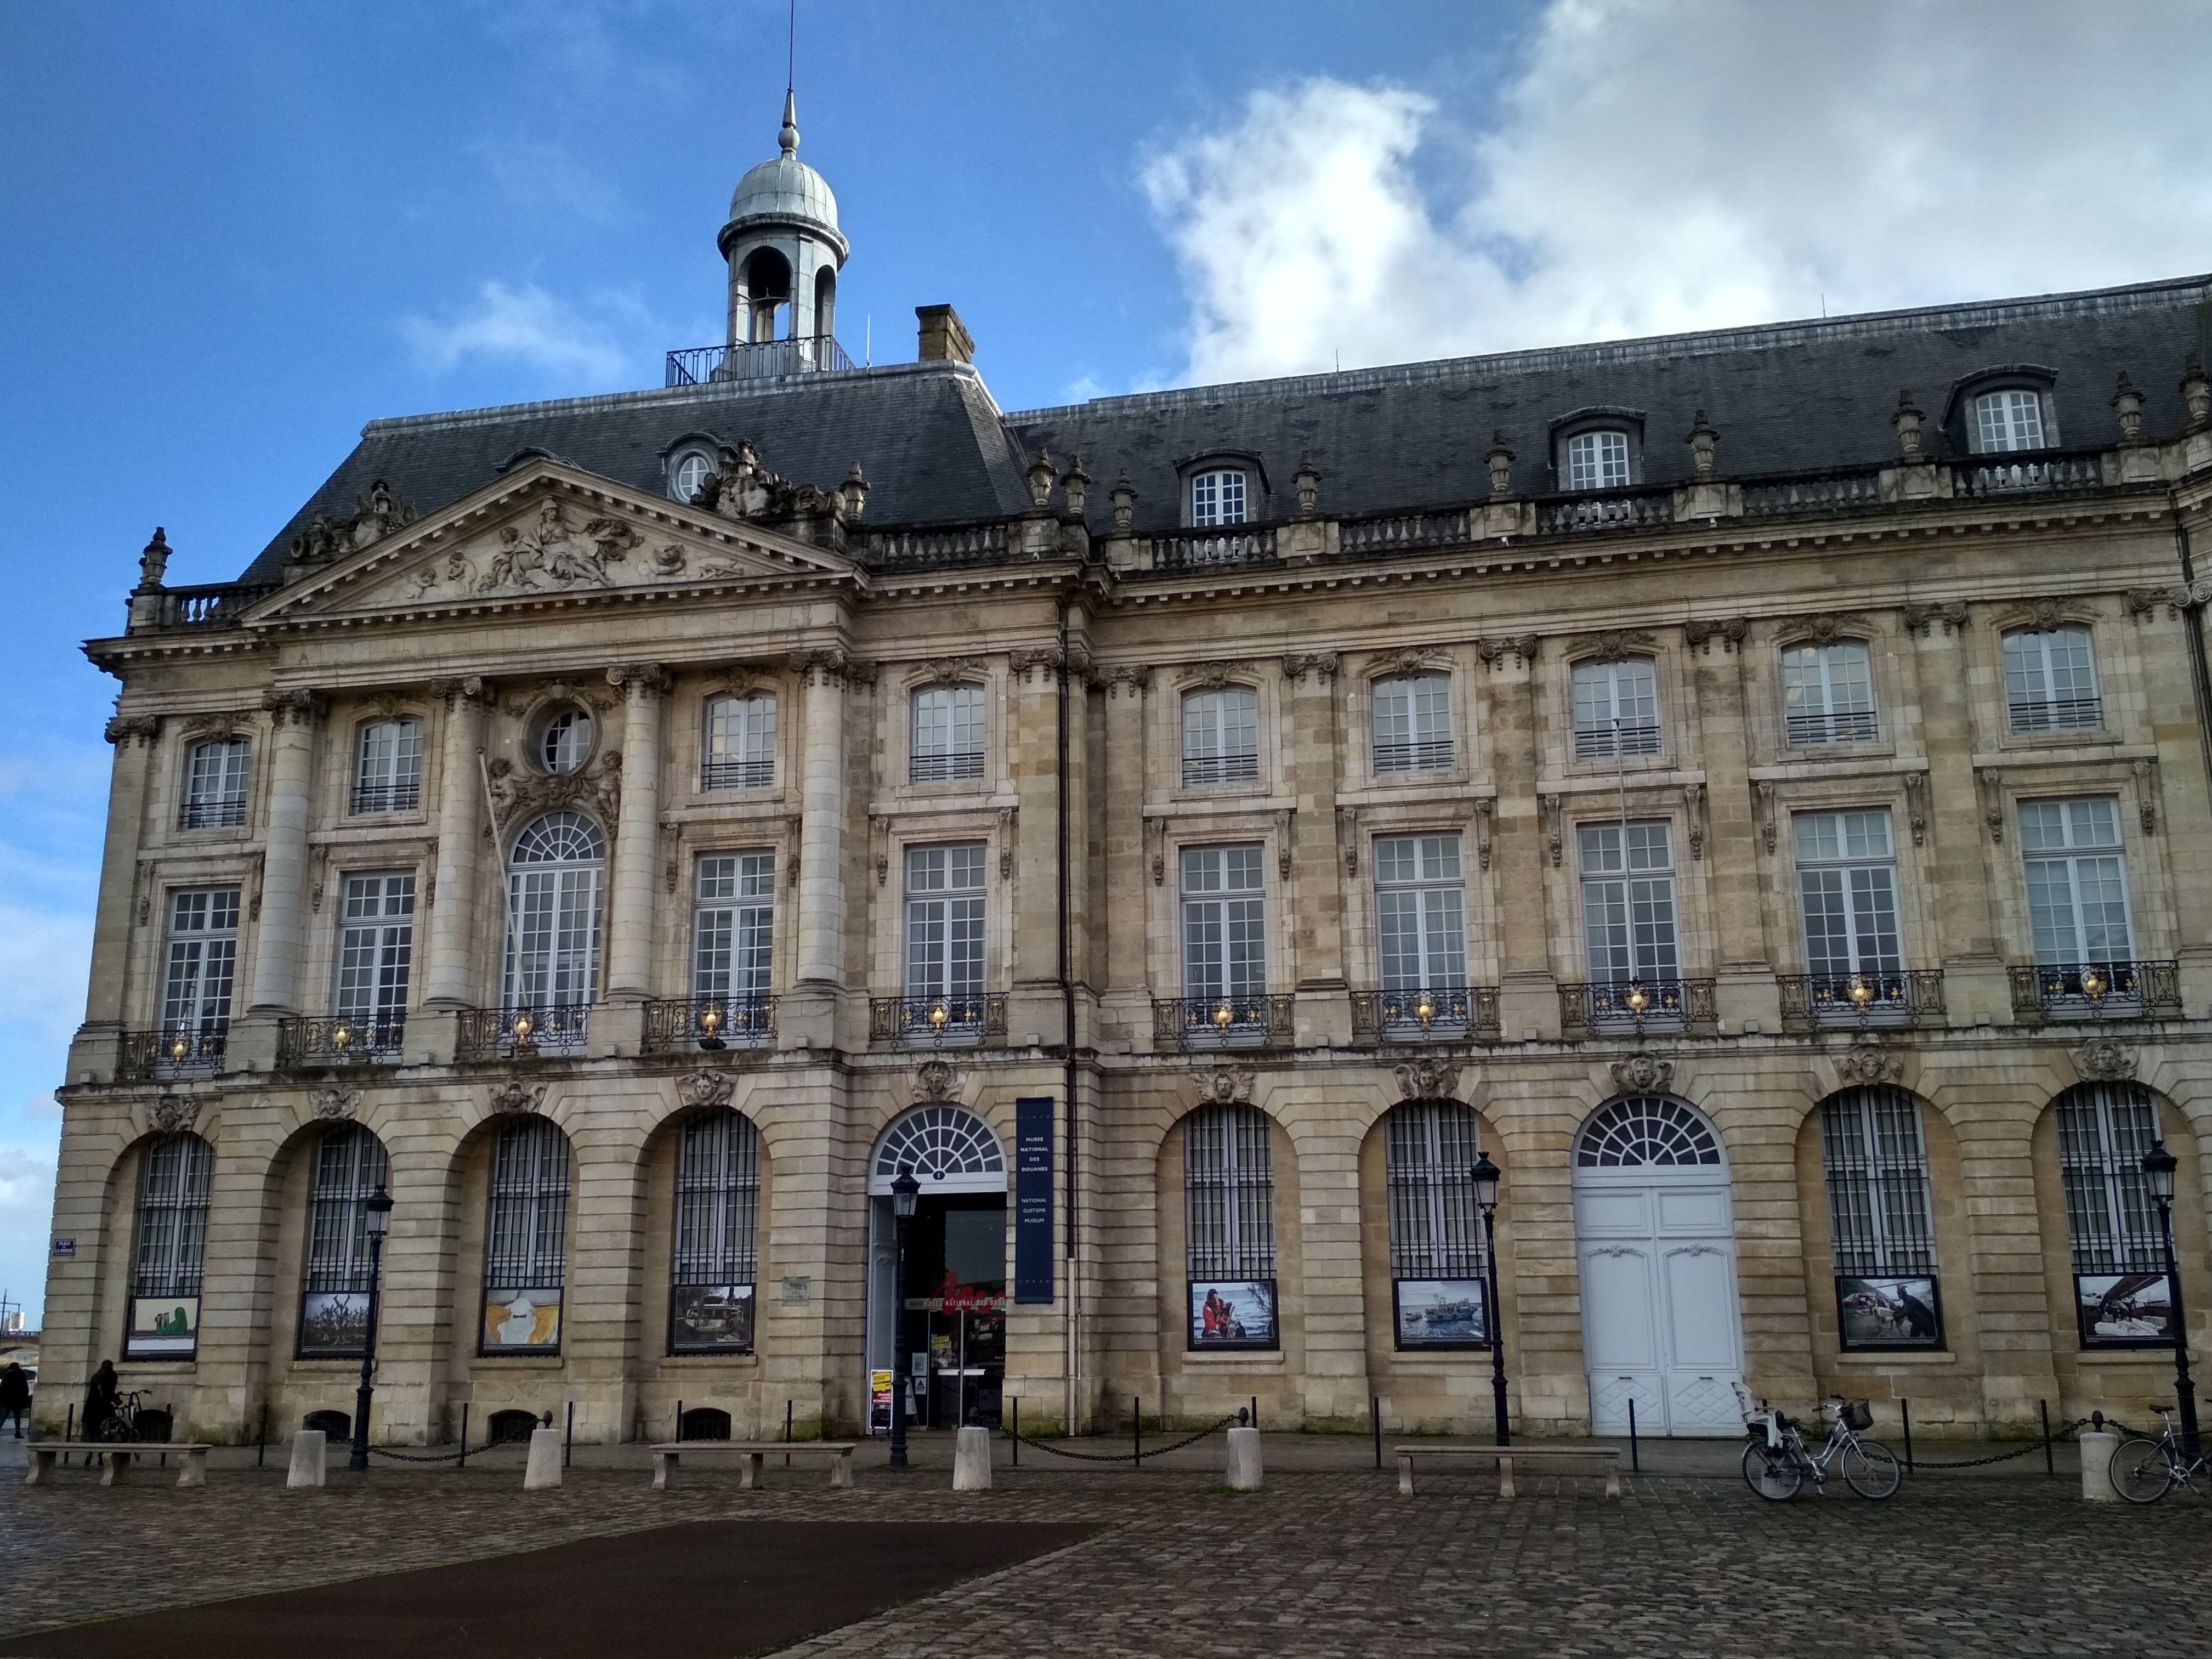 Musée National des Douanes, Bordeaux: All year